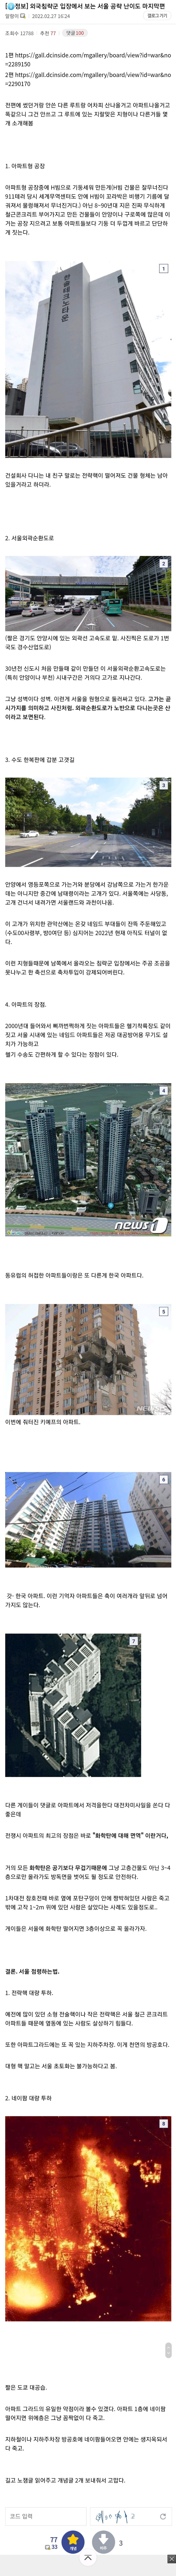 서울 침공 난이도 3탄